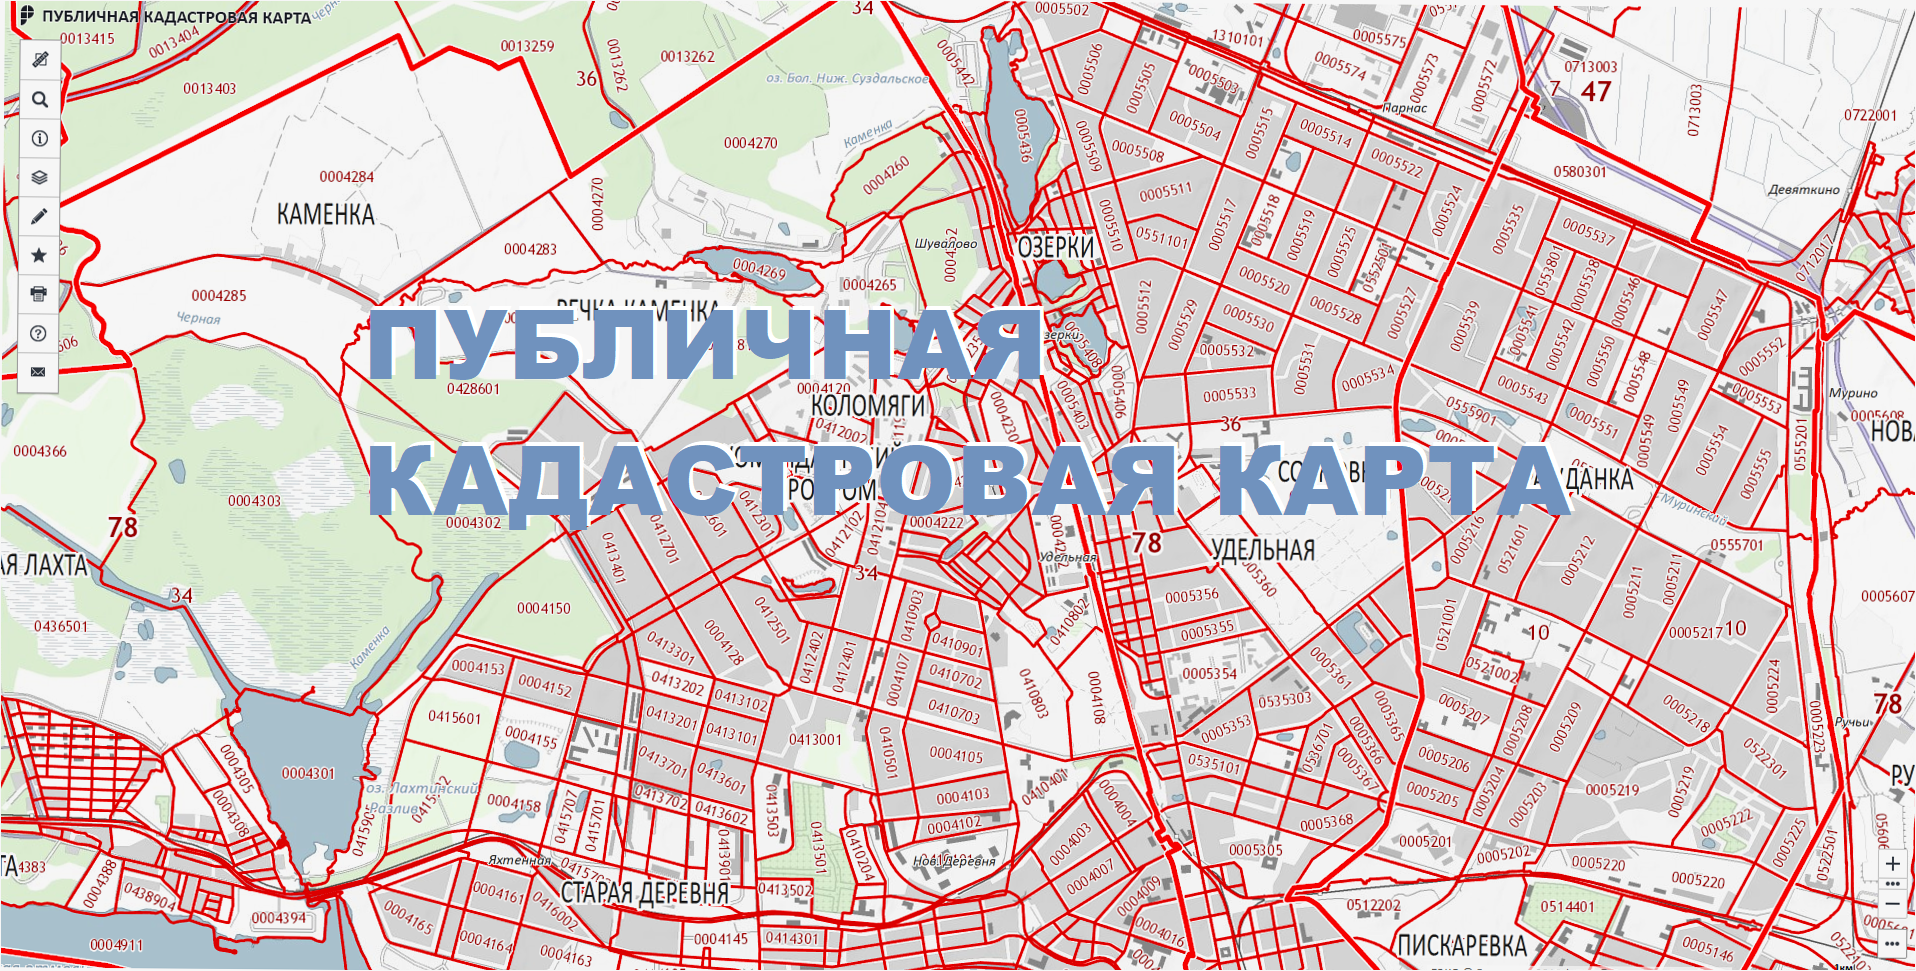 Публичная кадастровая карта калужской области 2020